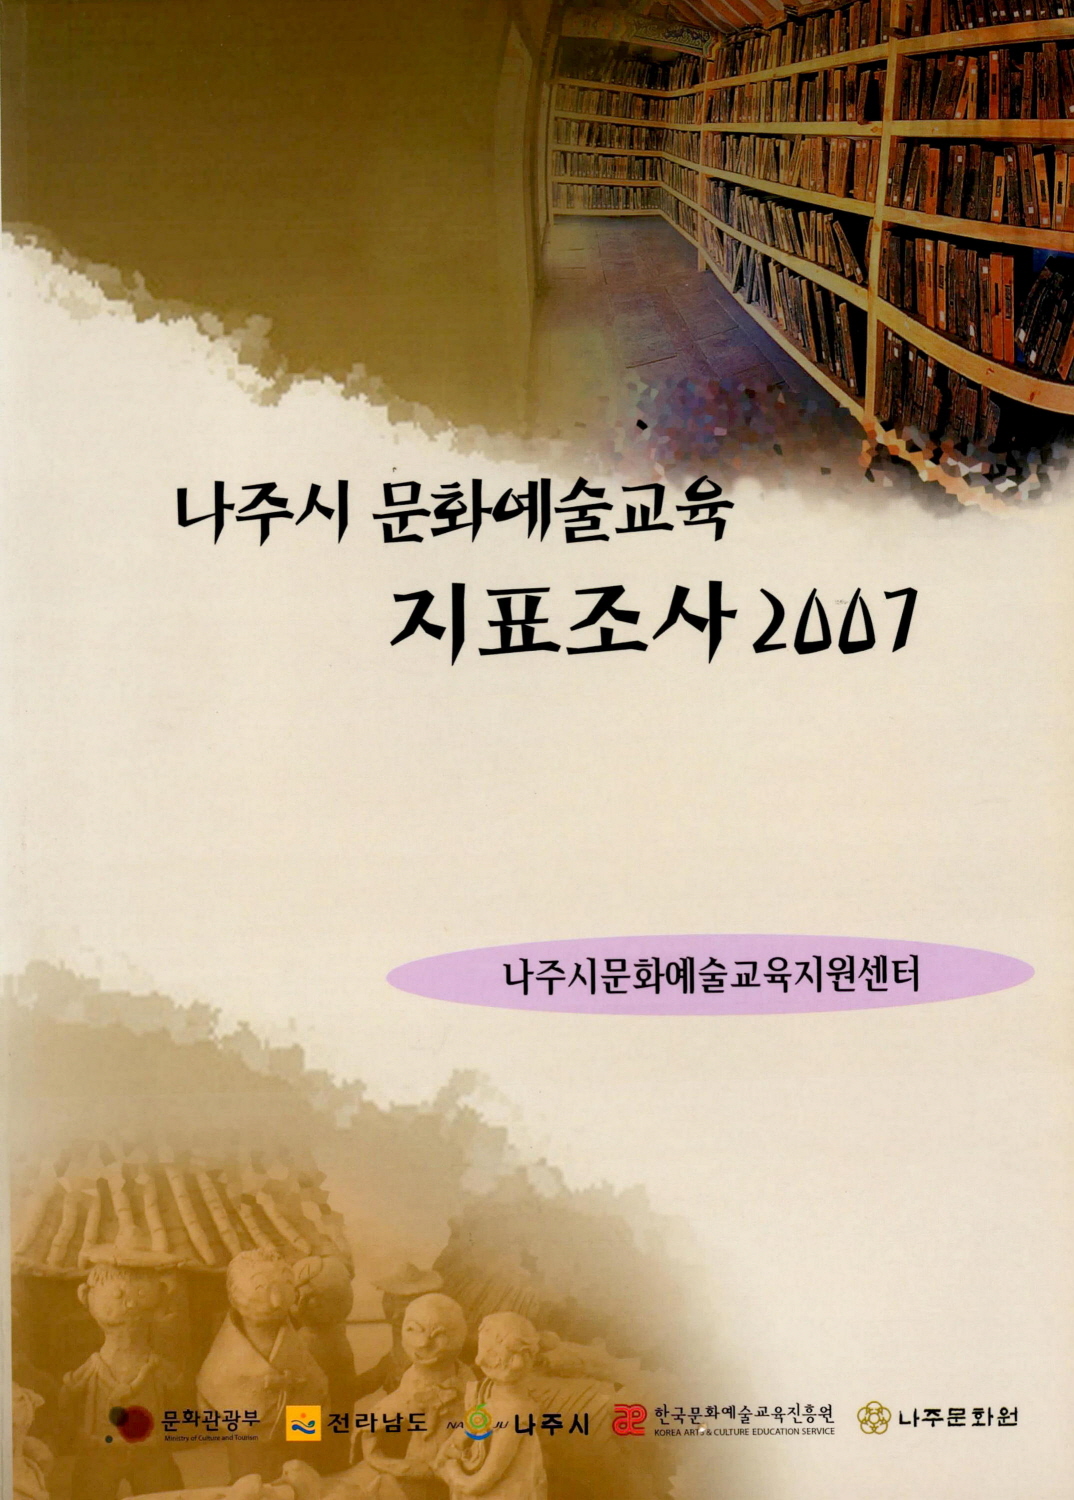 나주시 문화예술교육지표조사2007